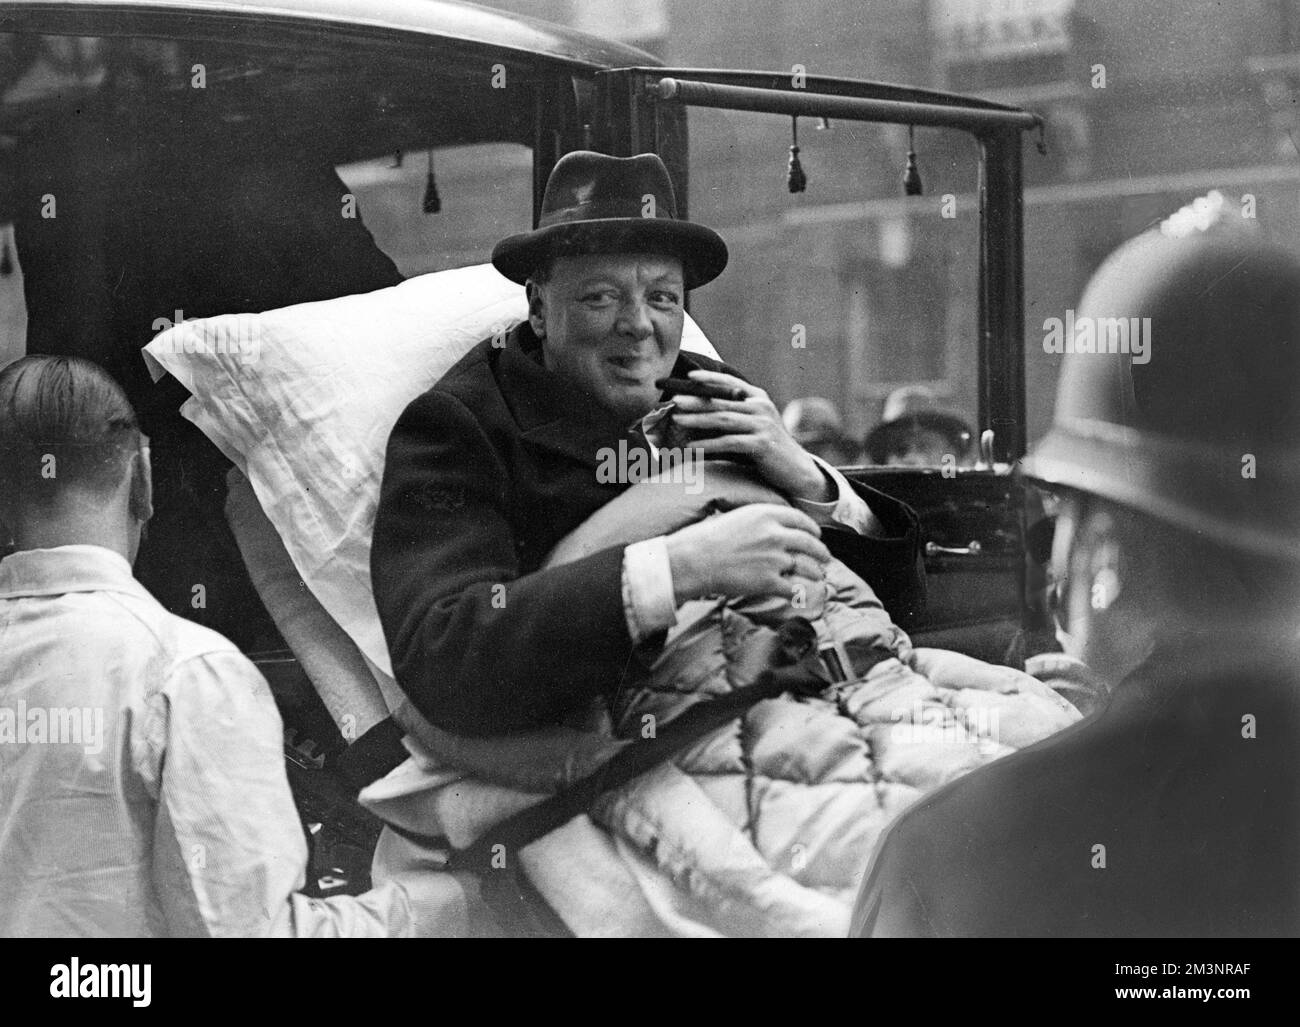 Winston Churchill (1874-1965), politico inglese, avendo un puff cheeky sul suo sigaro mentre è teso dal suo appartamento londinese ad una casa di cura del West End via ambulanza, essendo stato preso ammalato di paratifoid. Data: 1932 Foto Stock